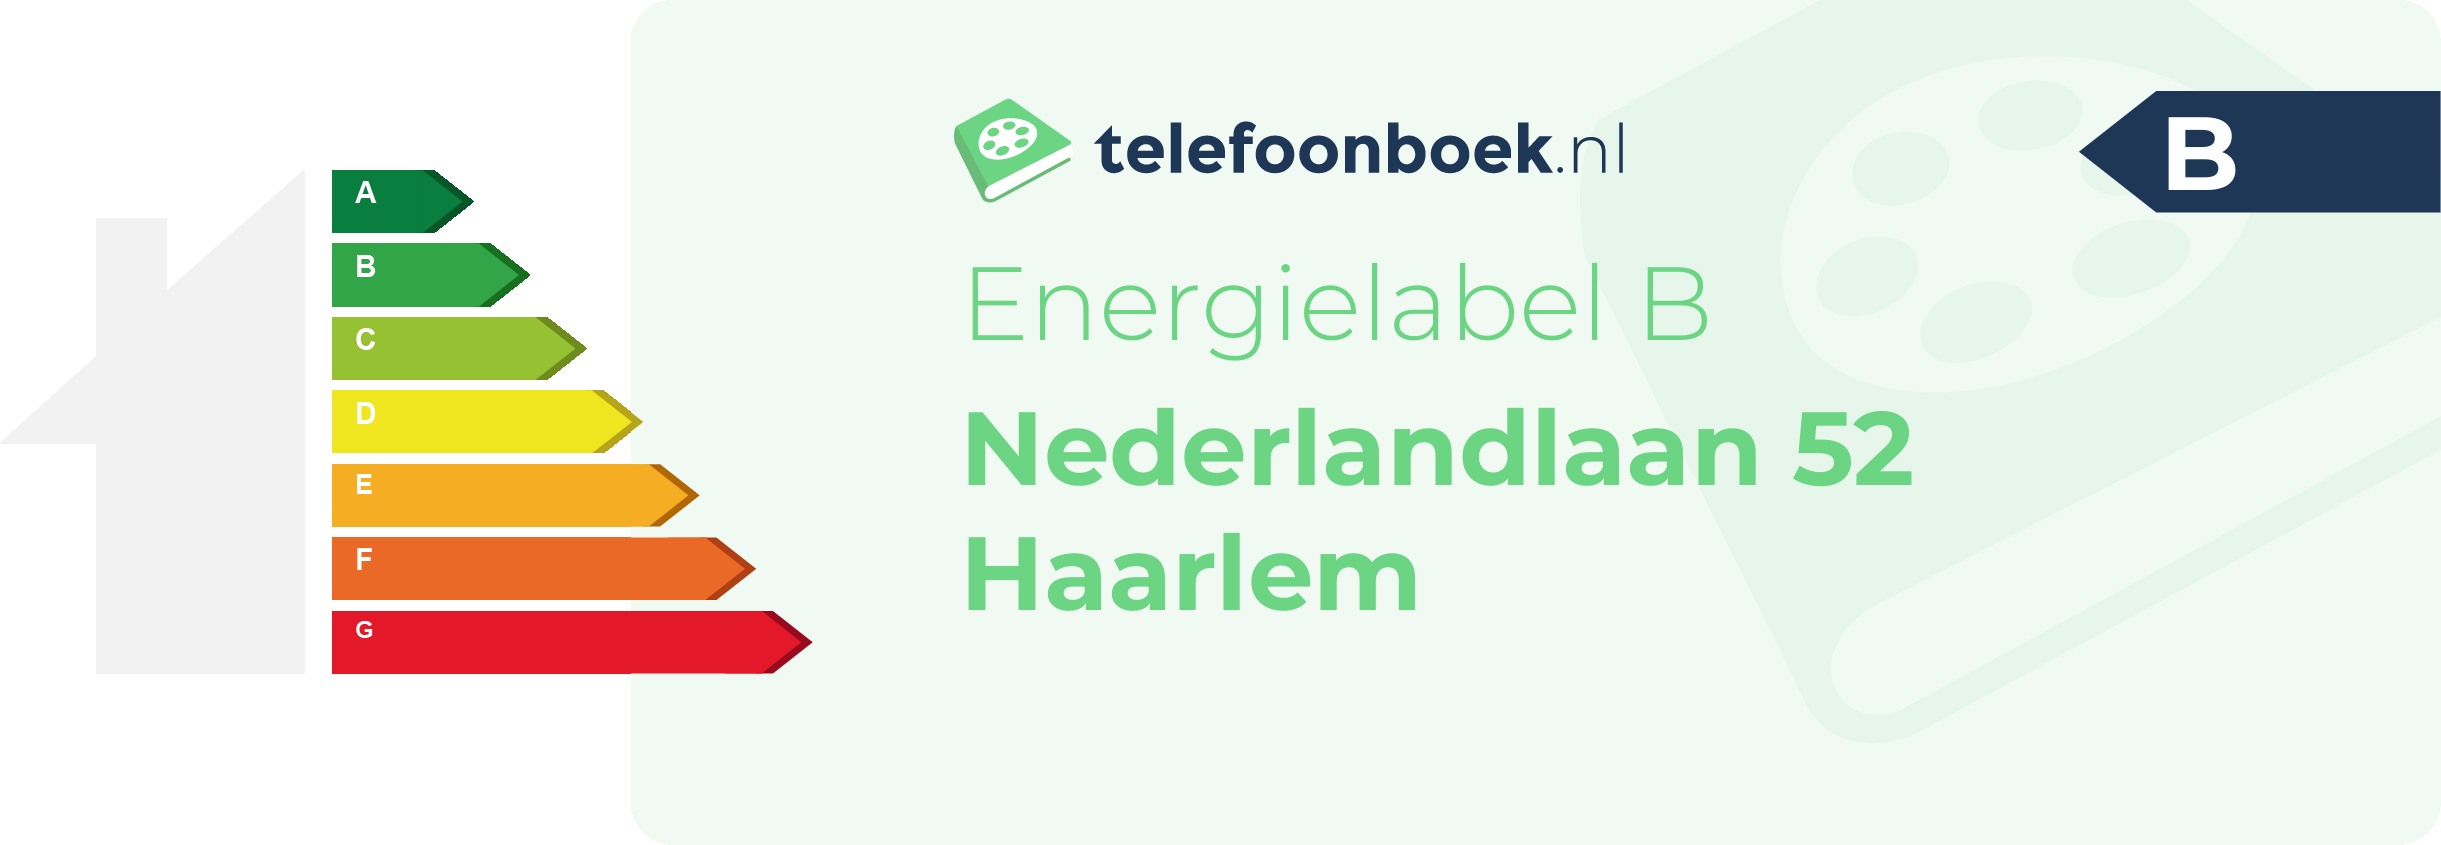 Energielabel Nederlandlaan 52 Haarlem